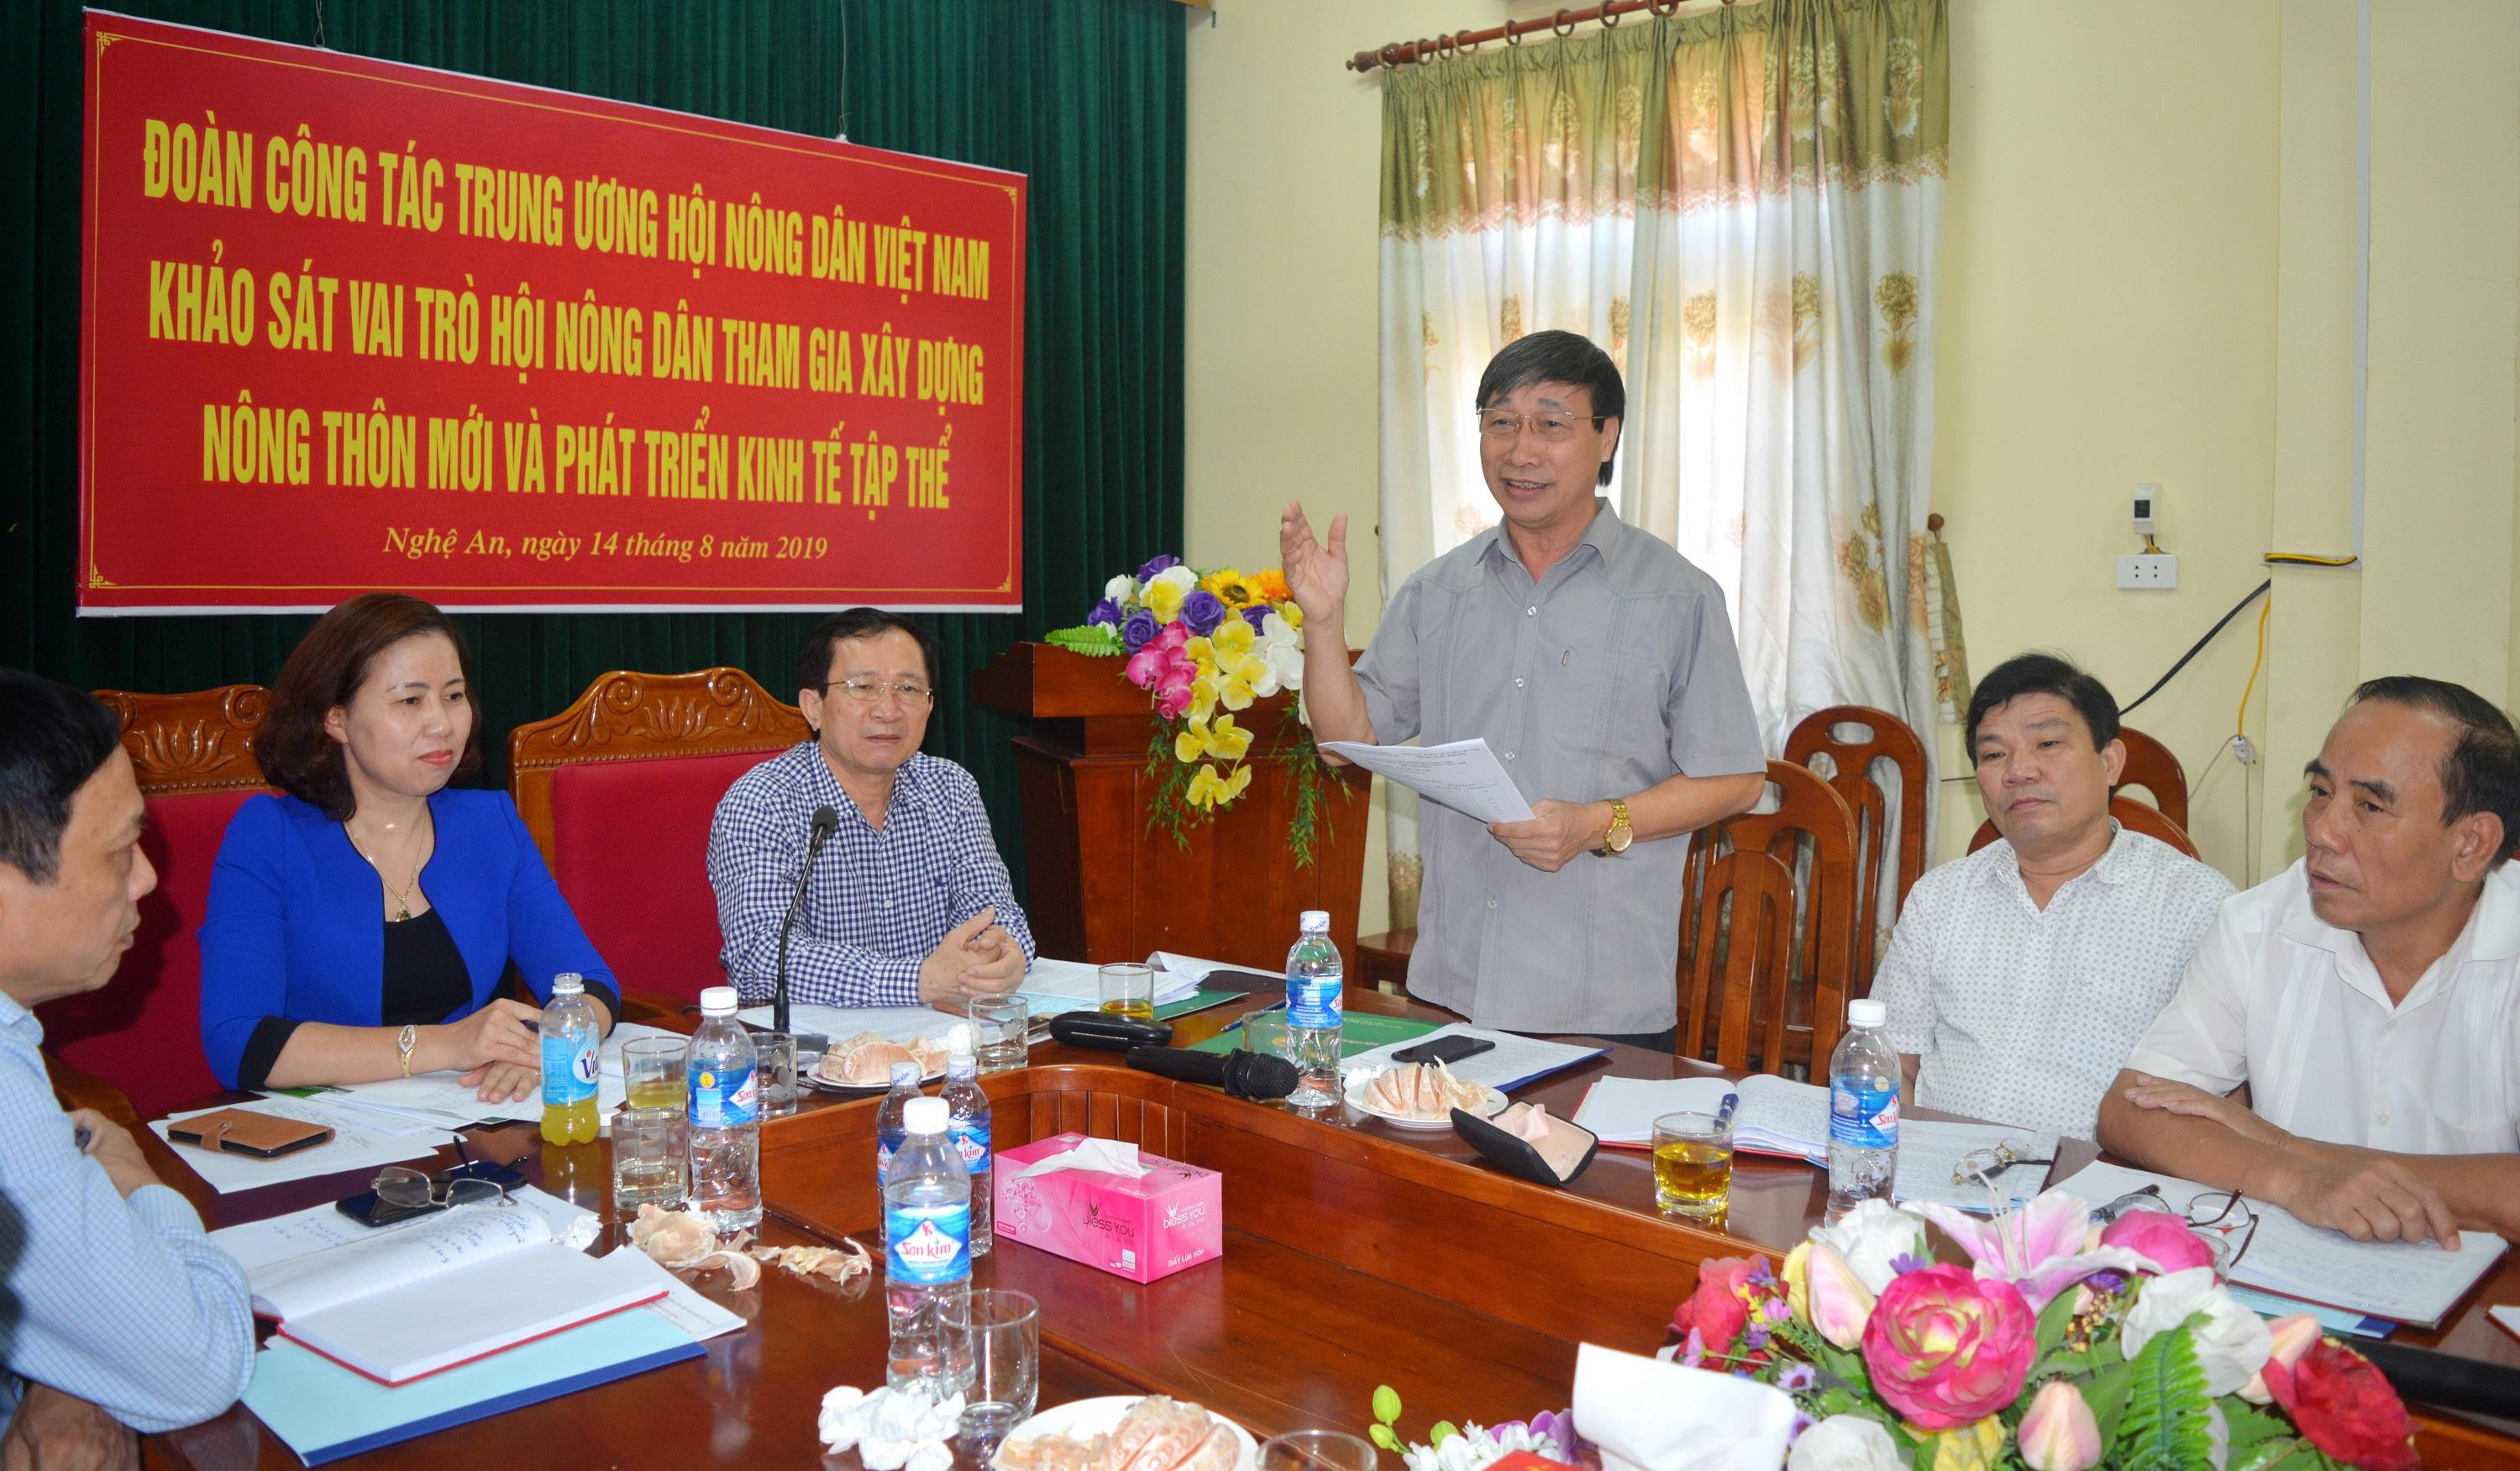 Lãnh đạo Sở NN&PTNT báo cáo với đoàn công tác kết quả nổi bật trong xây dựng NTM ở Nghệ An. Ảnh: Thanh Phúc